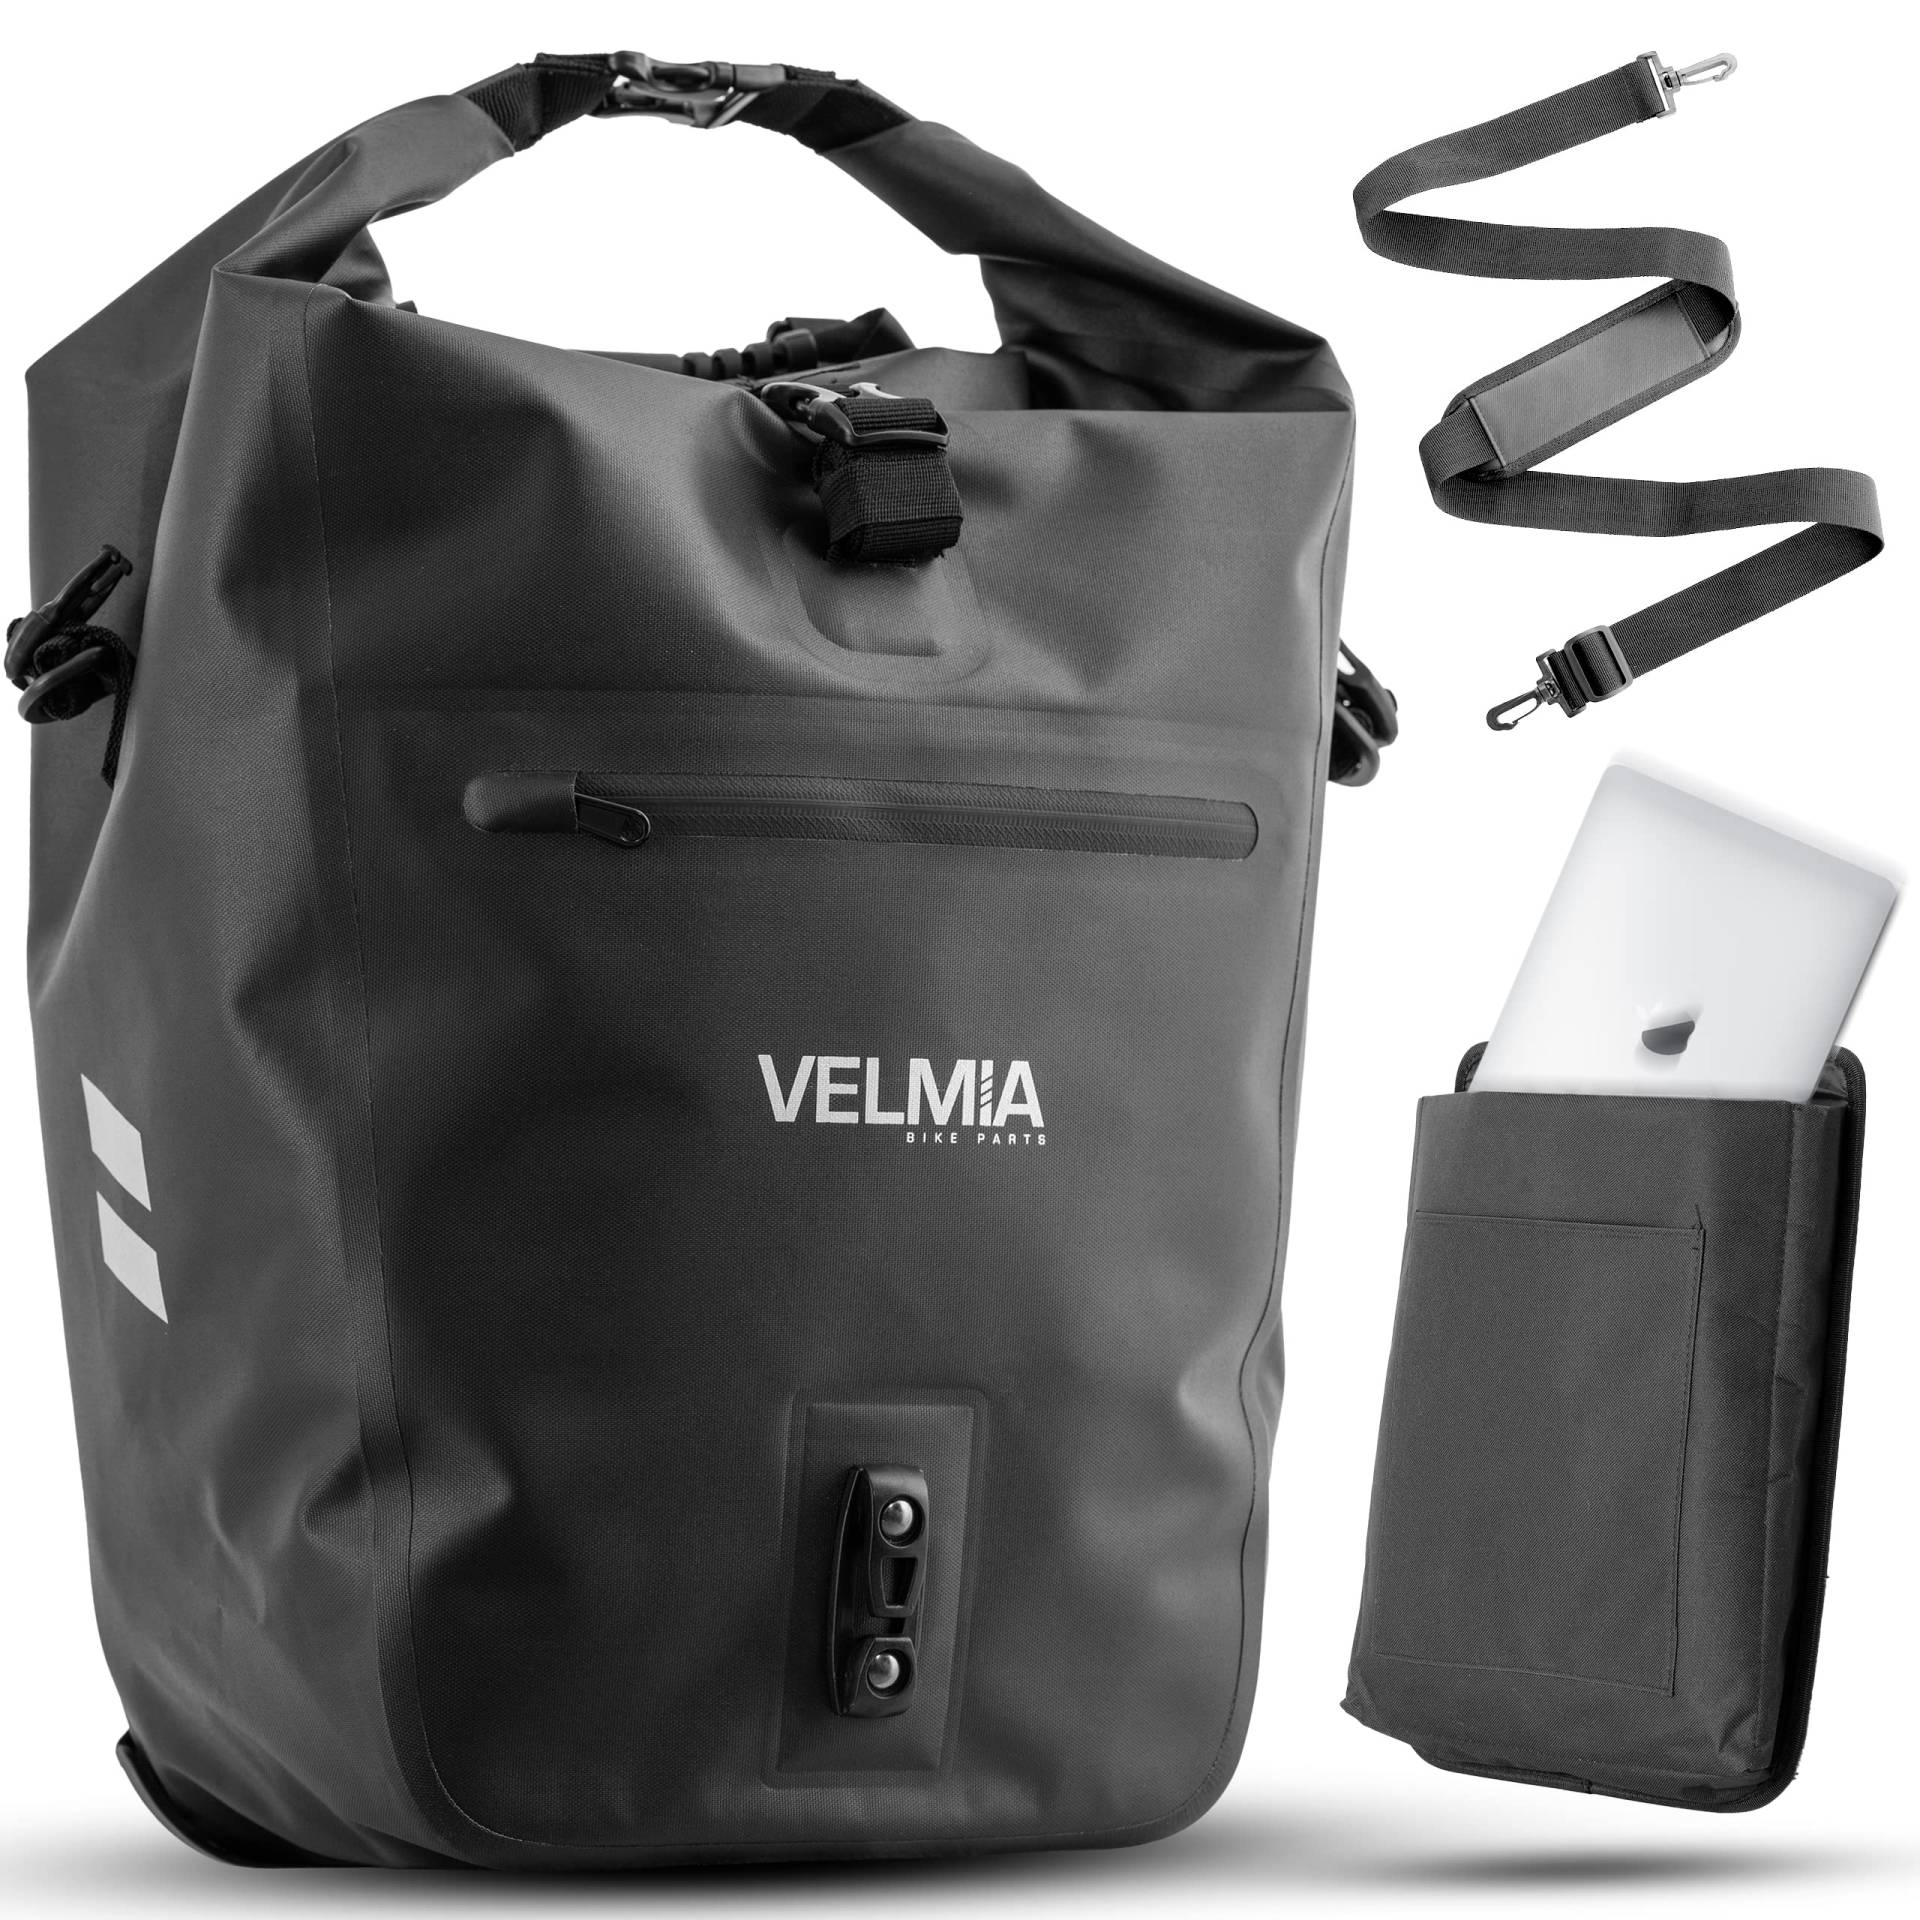 VELMIA Fahrradtasche für Gepäckträger I mit praktischem Tragegriff I 100% Wasserdicht fahrradtasche gepäckträger, gepäckträgertasche, Fahrrad Taschen hinten von VELMIA